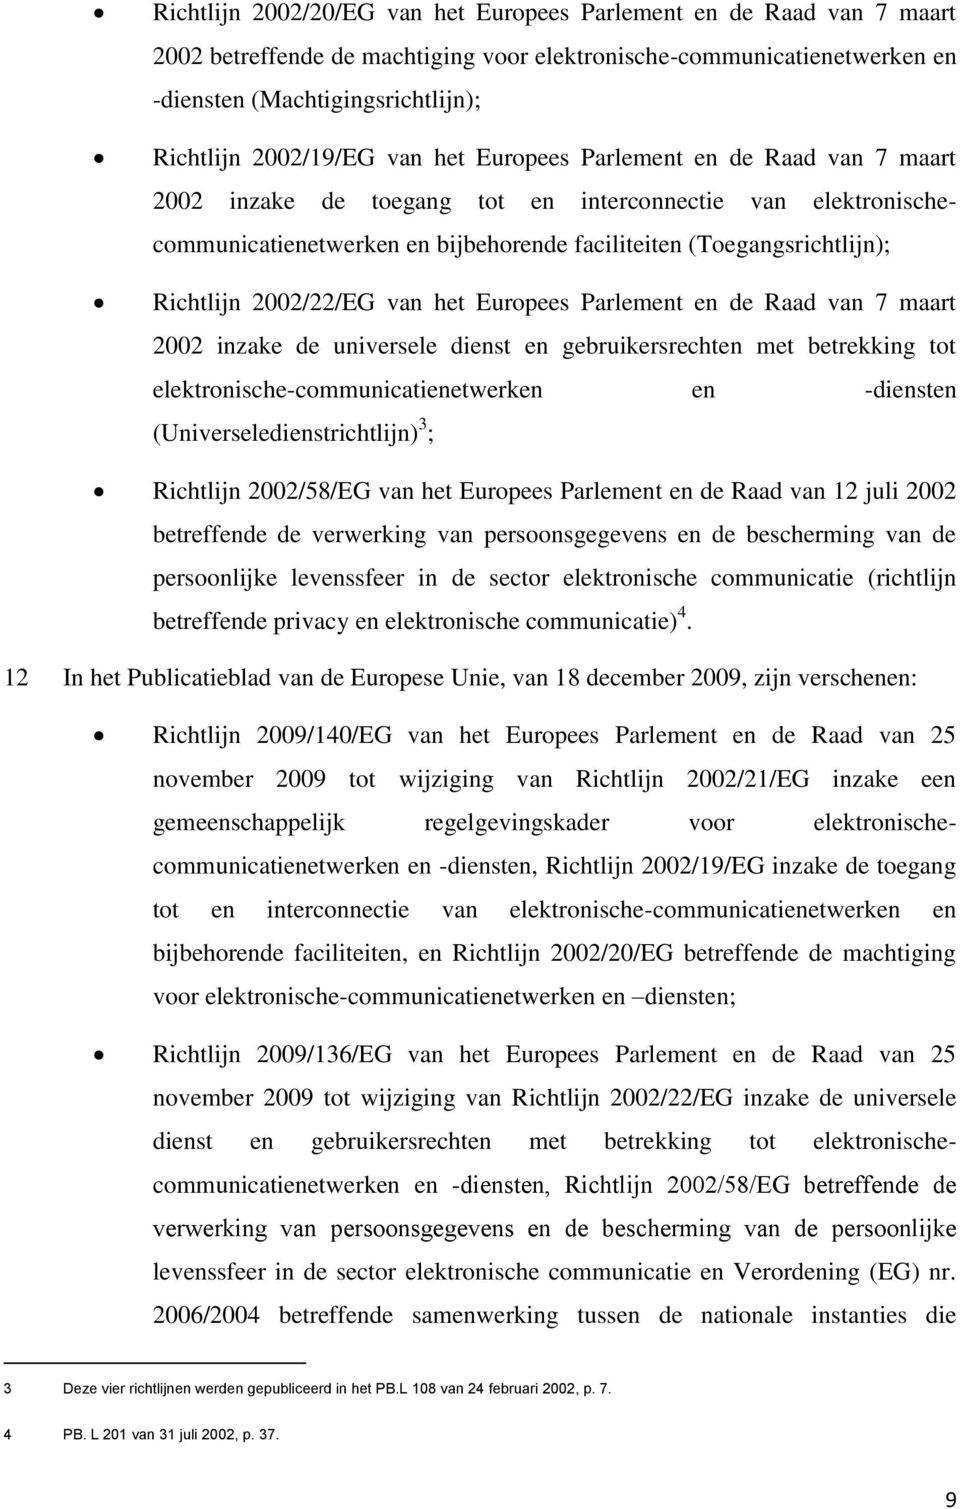 Richtlijn 2002/22/EG van het Europees Parlement en de Raad van 7 maart 2002 inzake de universele dienst en gebruikersrechten met betrekking tot elektronische-communicatienetwerken en -diensten